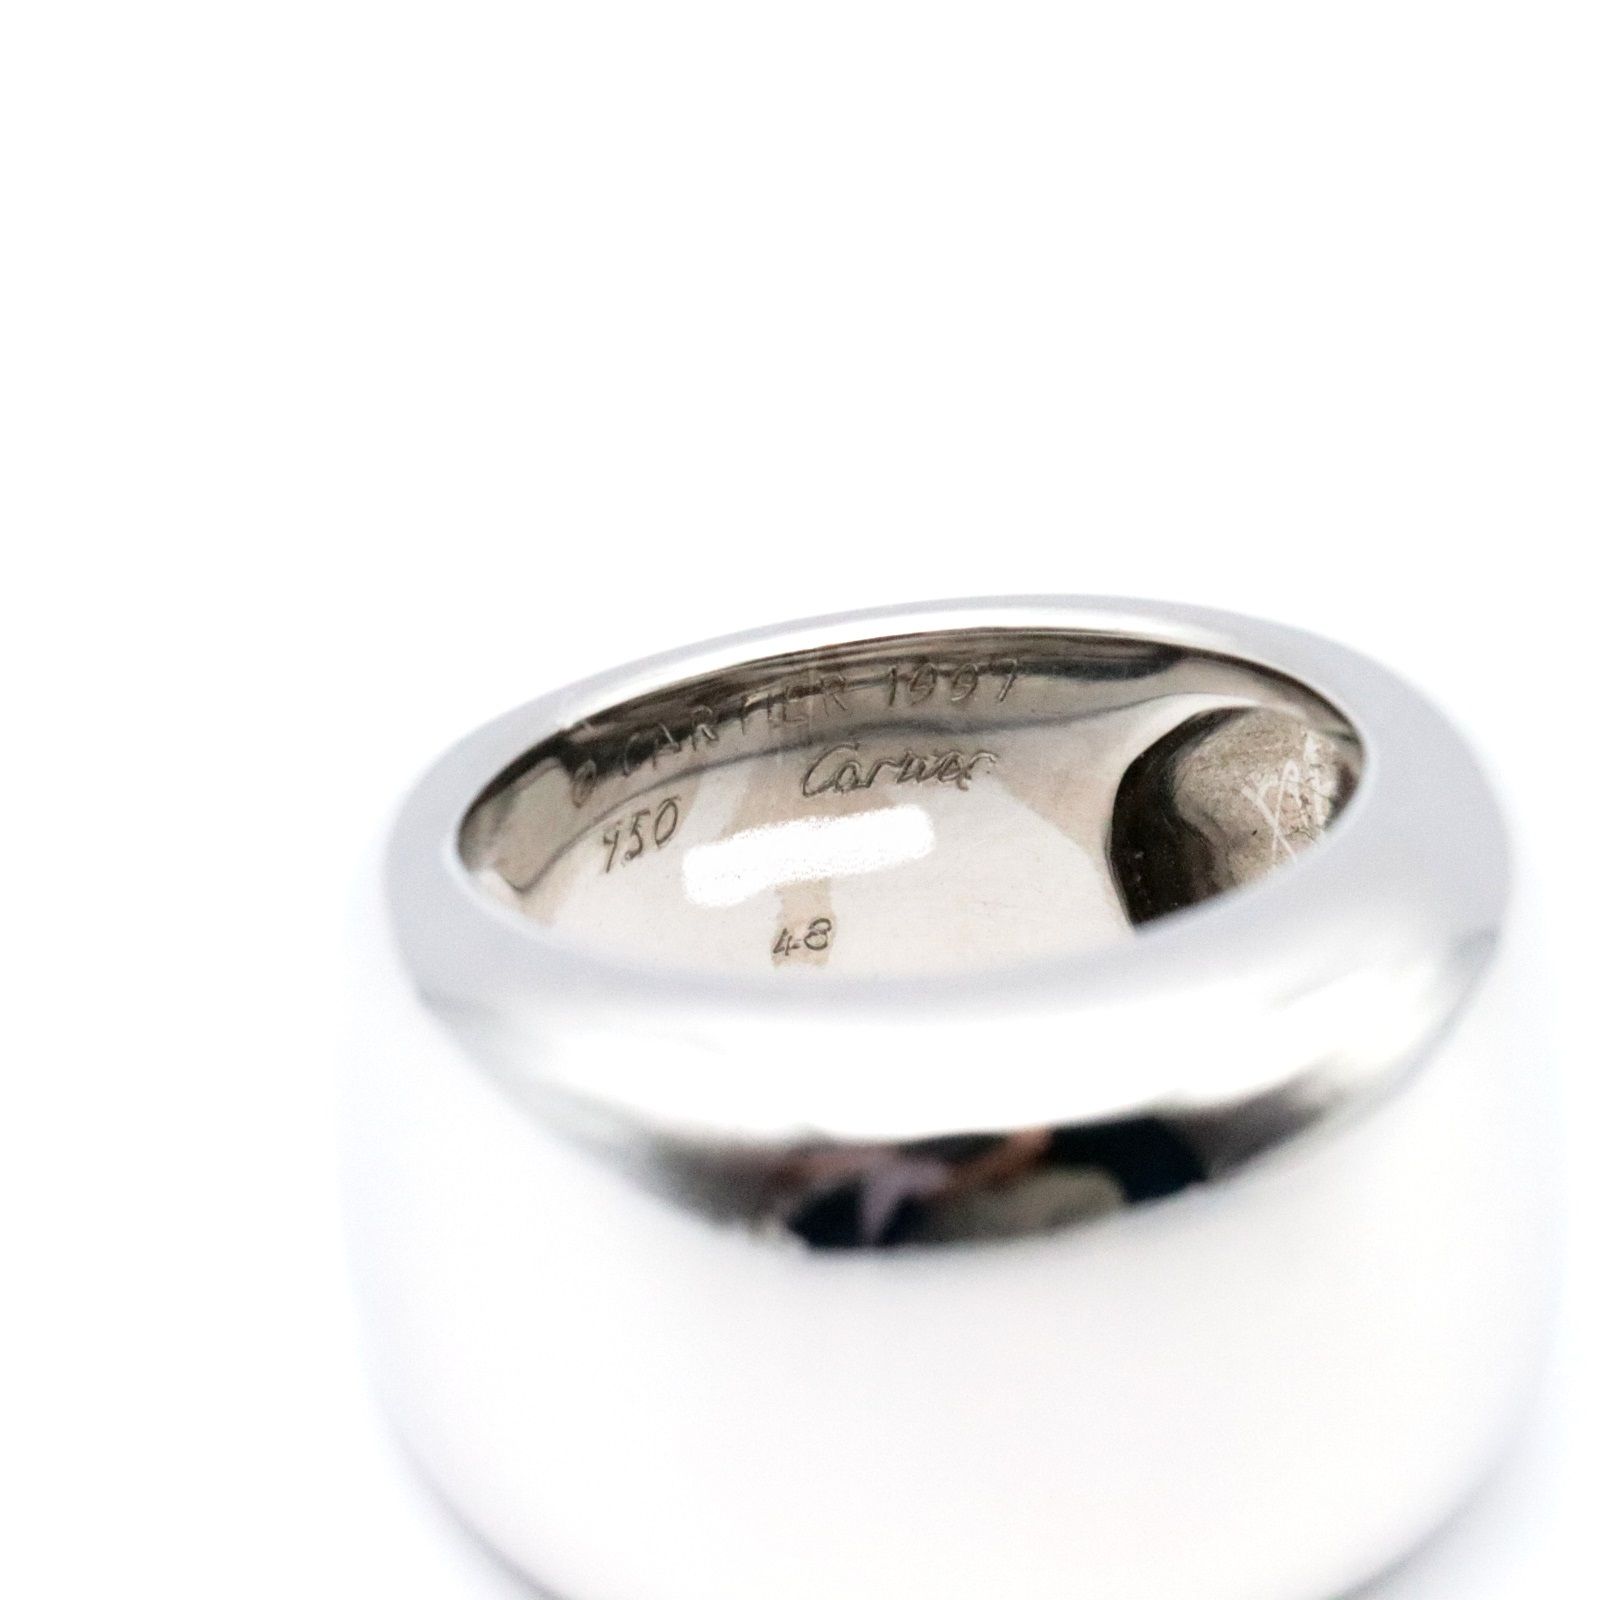 Cartier カルティエ ヌーベルバーグ リング 750 K18 ホワイトゴールド 指輪 廃盤 アクセサリー ジュエリー 53(12号) ラグジュアリー ブランド 【メンズ】【美品】